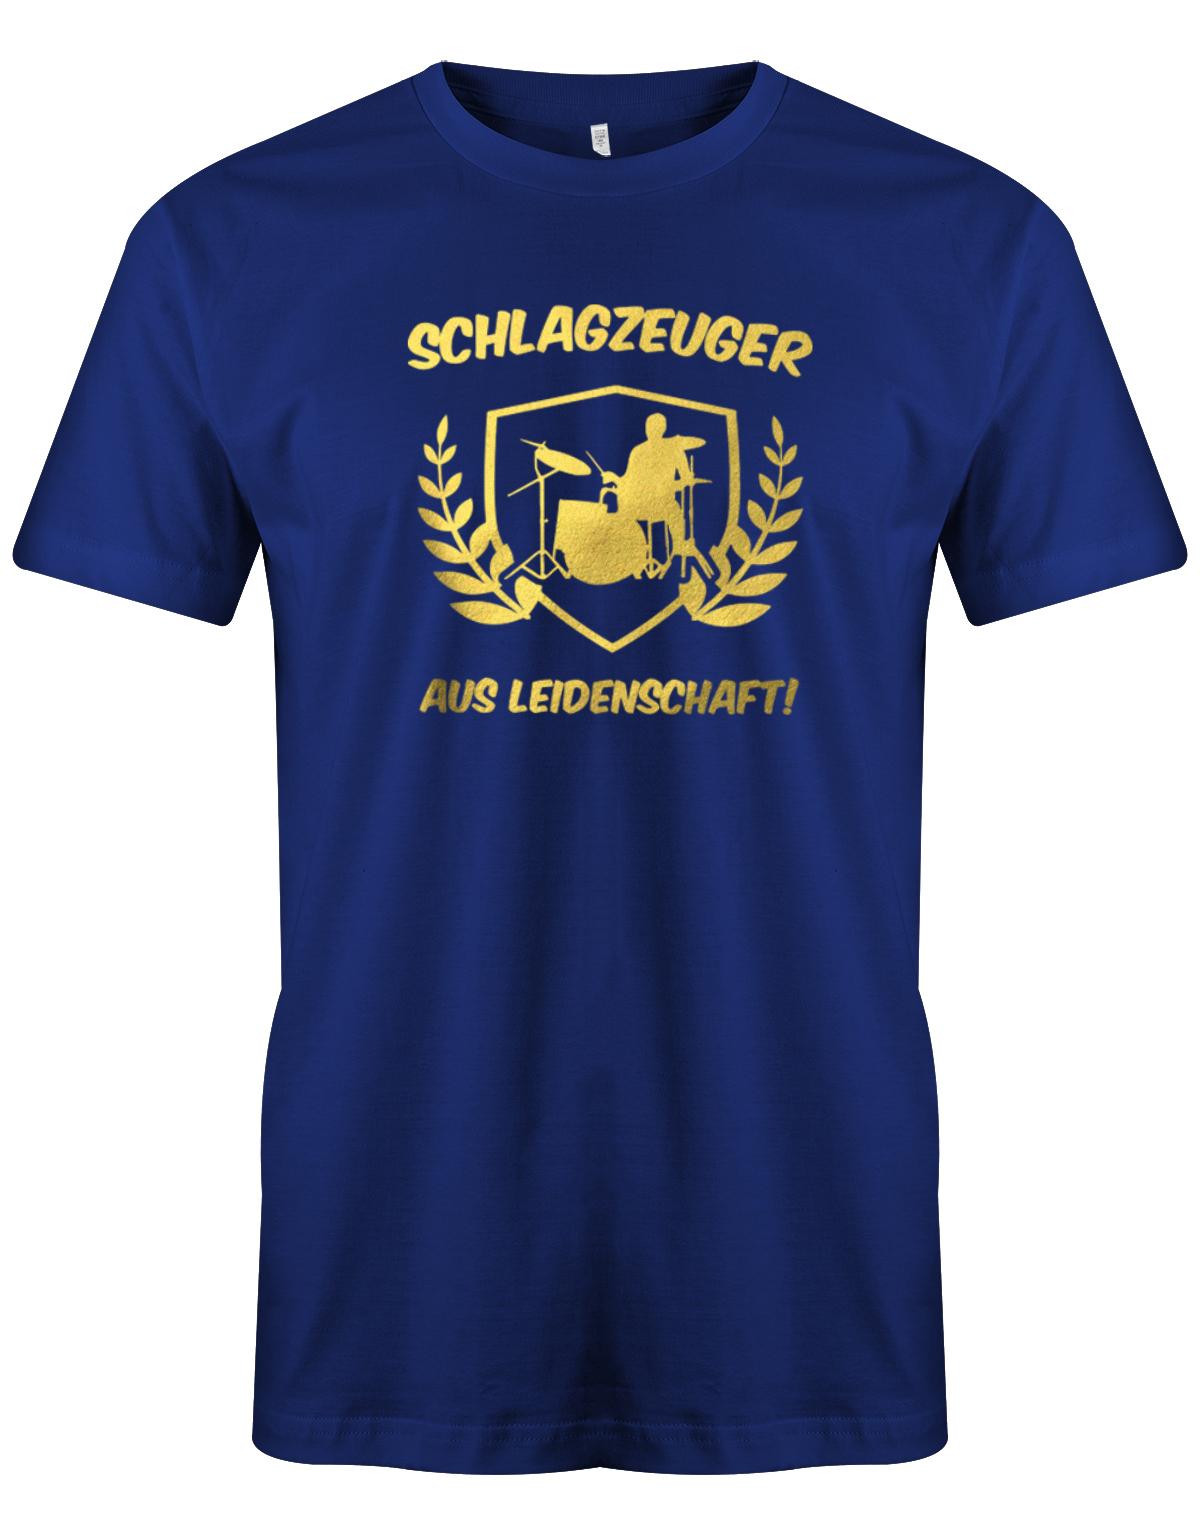 SChlagzeuger-aus-leidenschaft-Herren-Shirt-Royalblau